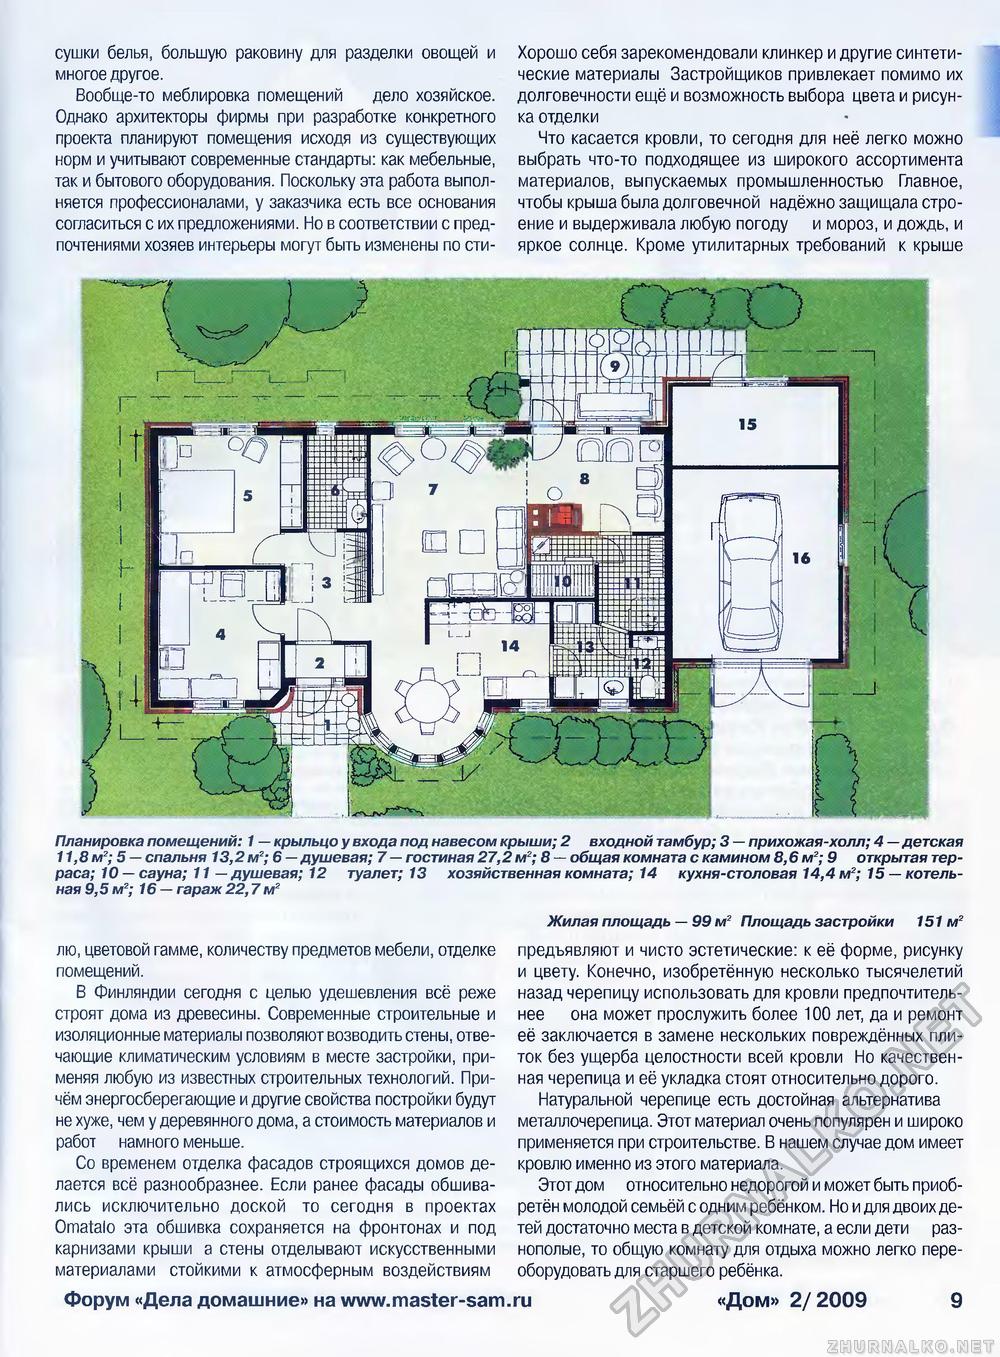 Дом 2009-02, страница 9